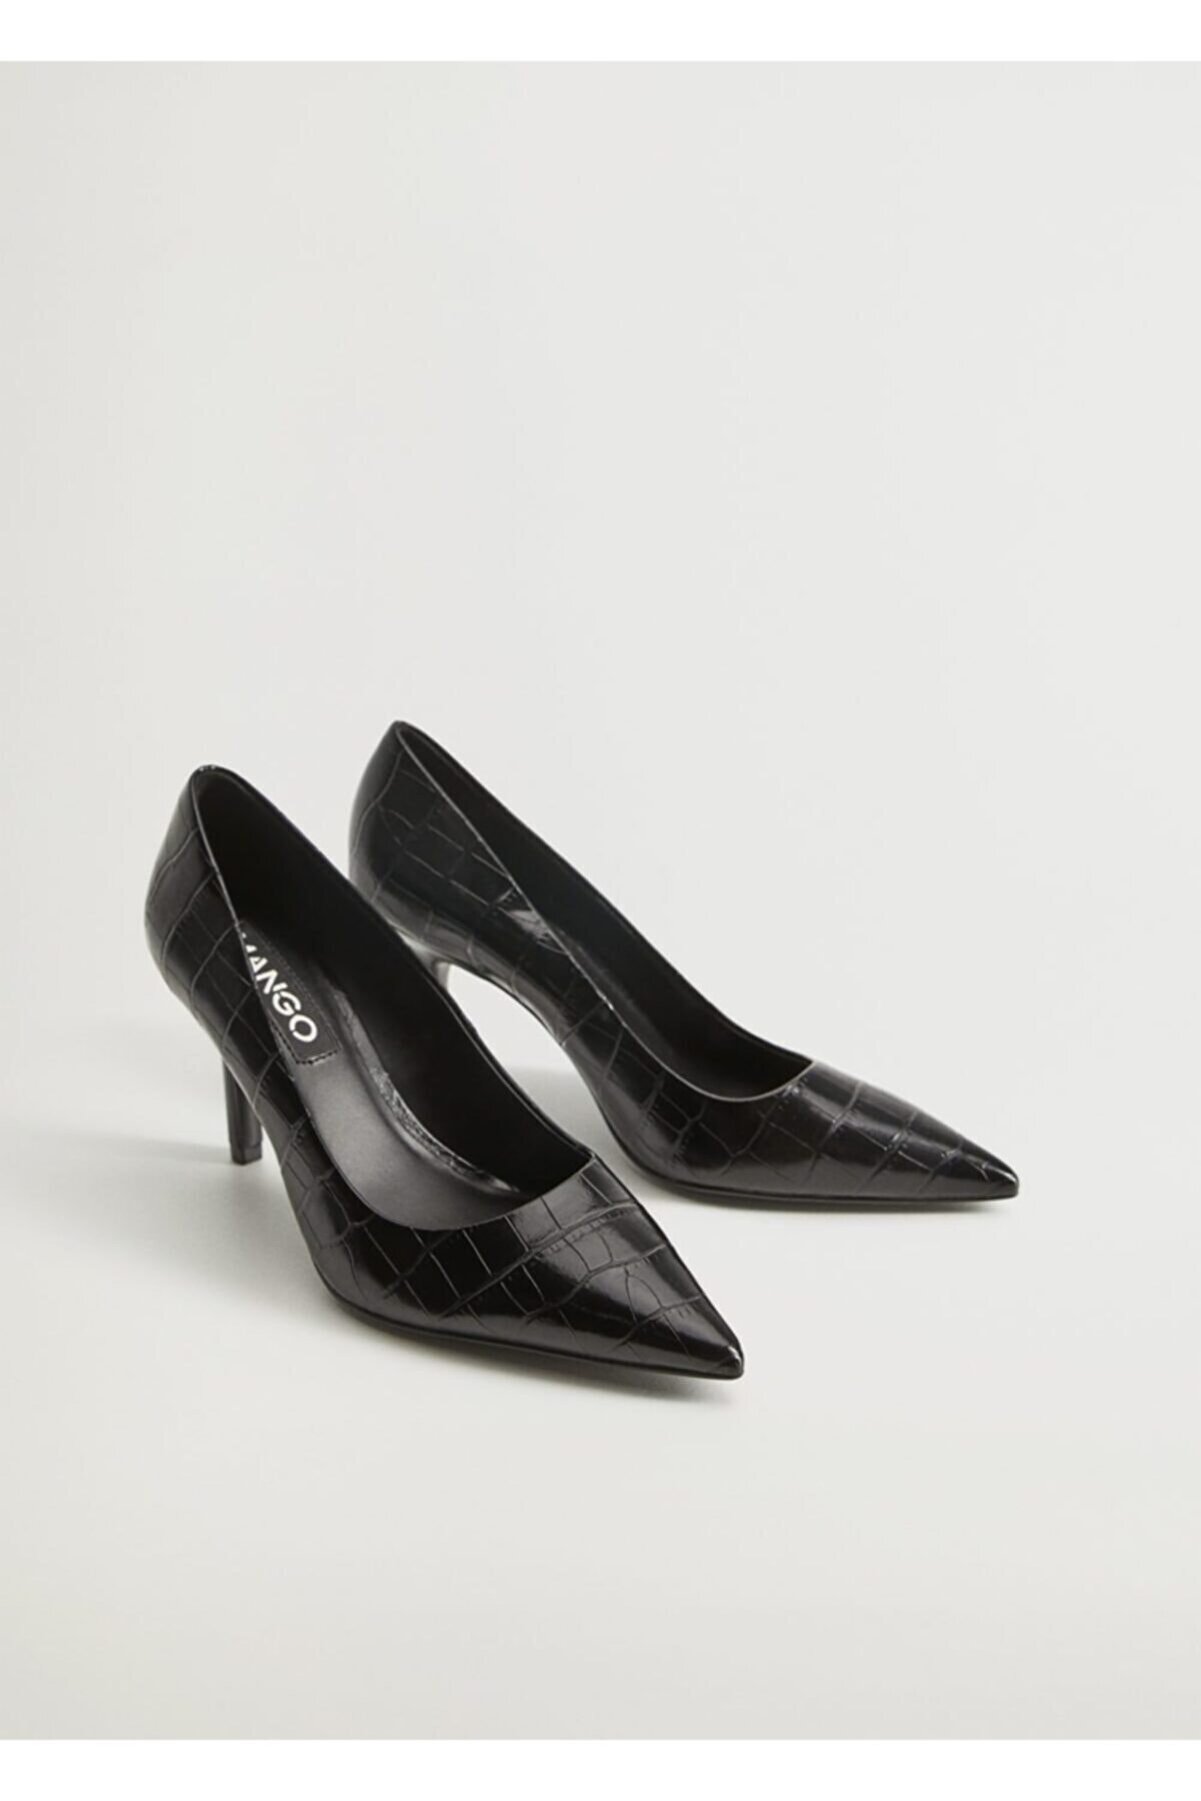 MANGO Kadın Siyah Timsah Derisi Görünümlü Topuklu Ayakkabı